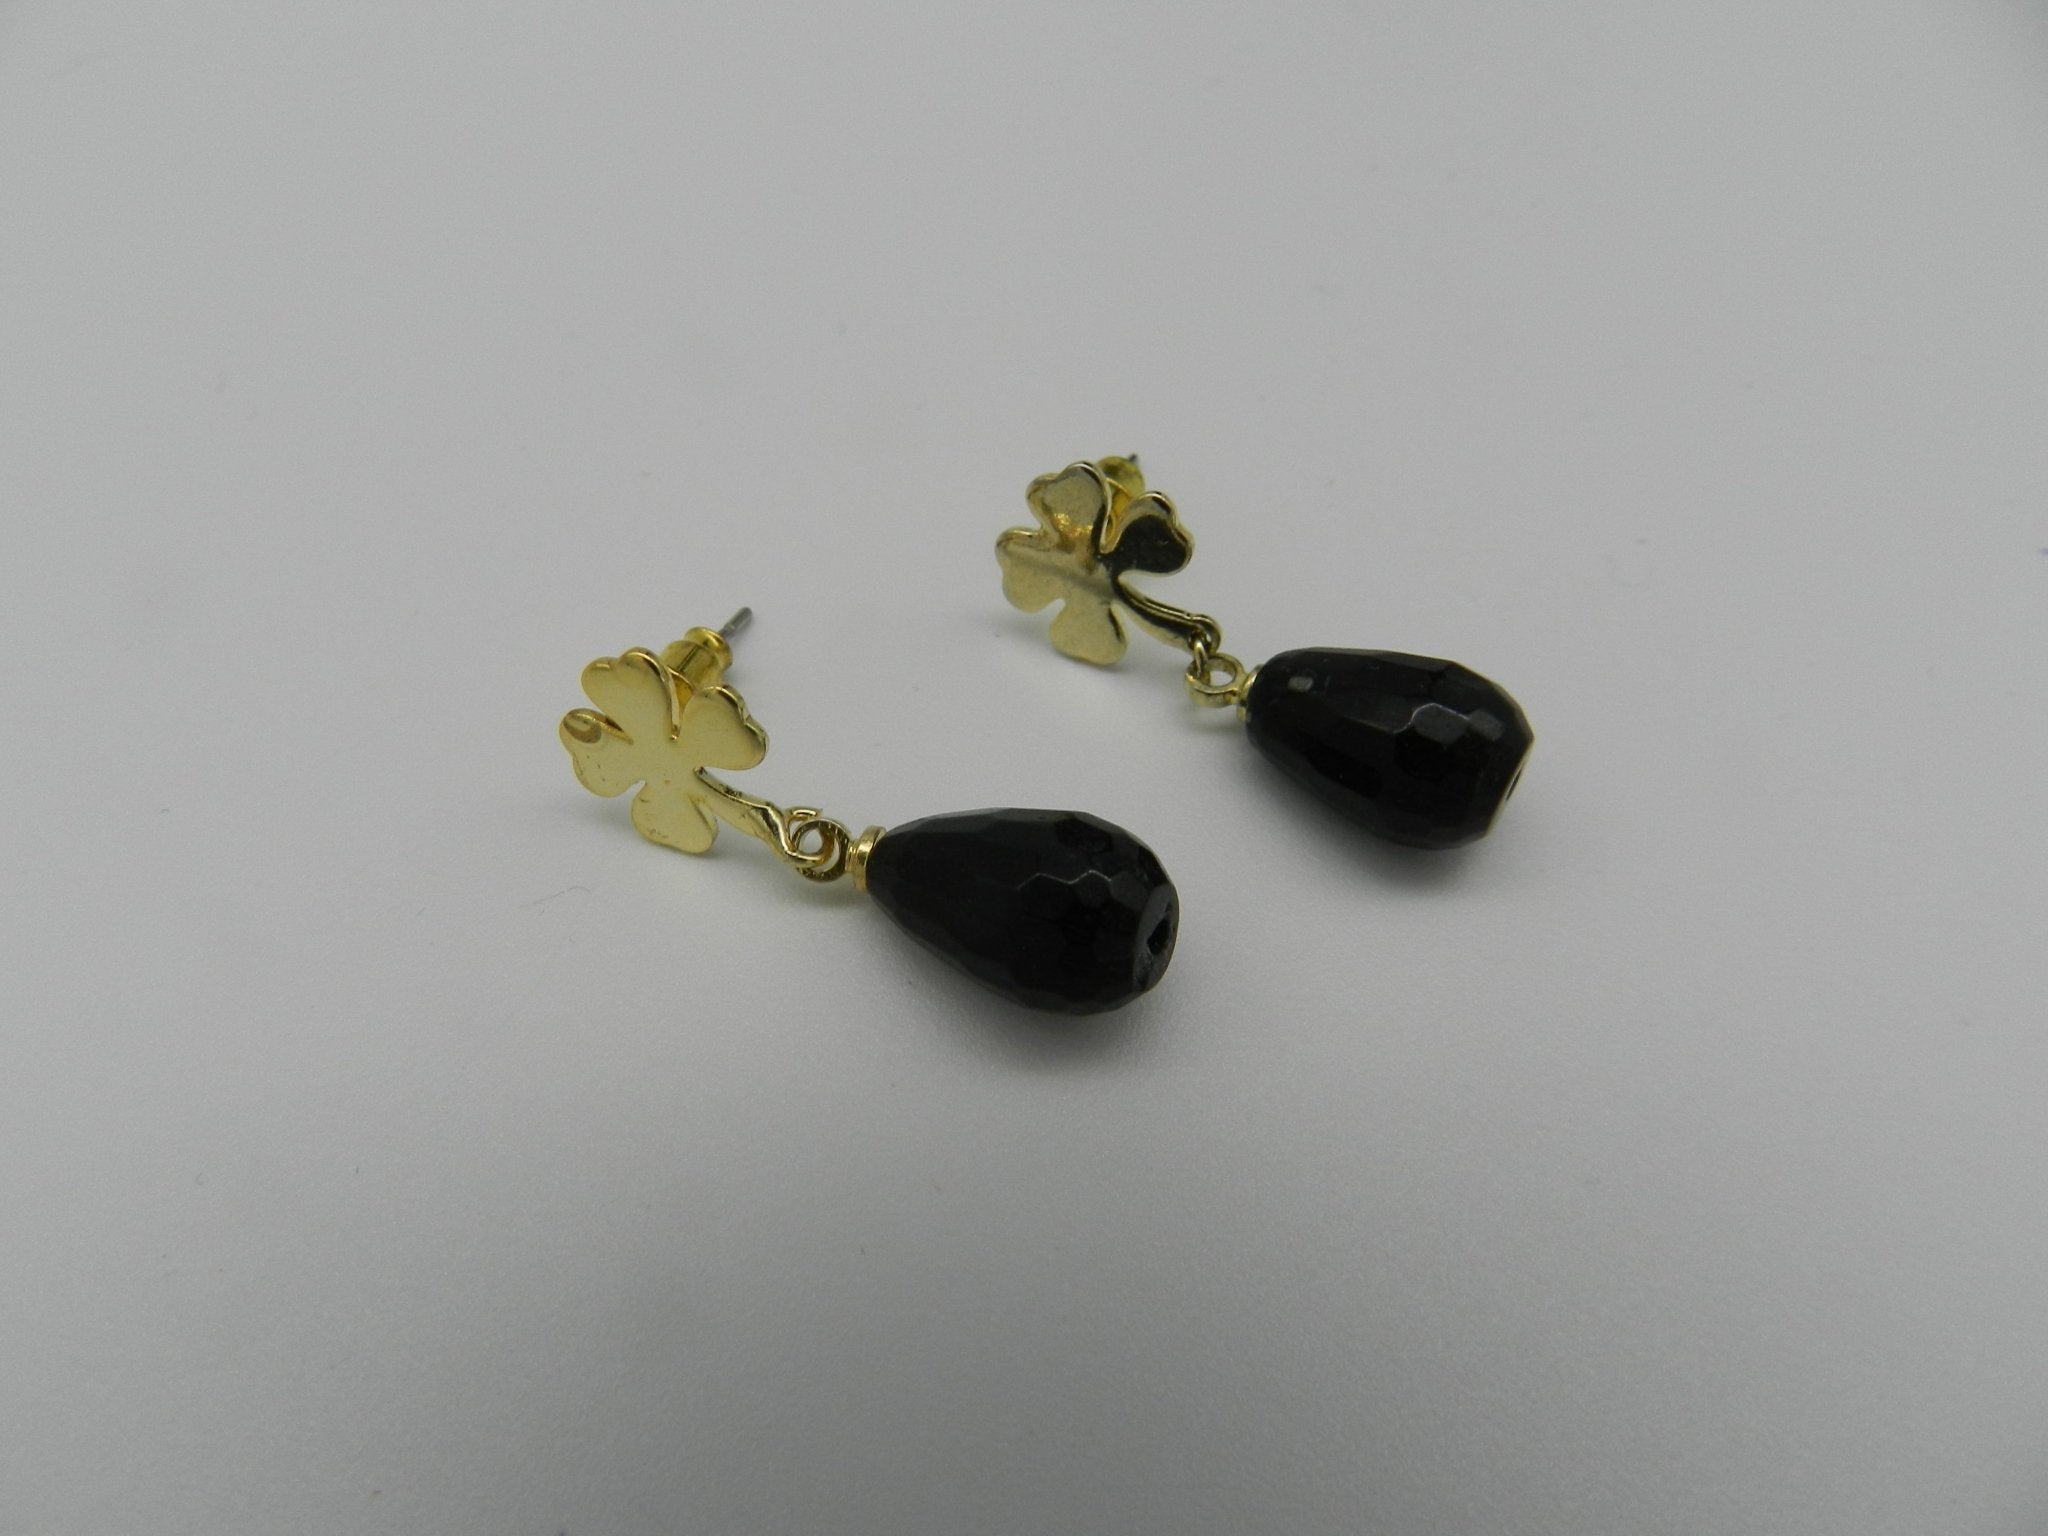 Tear drop earrings with gemstones - Natalia Willmott